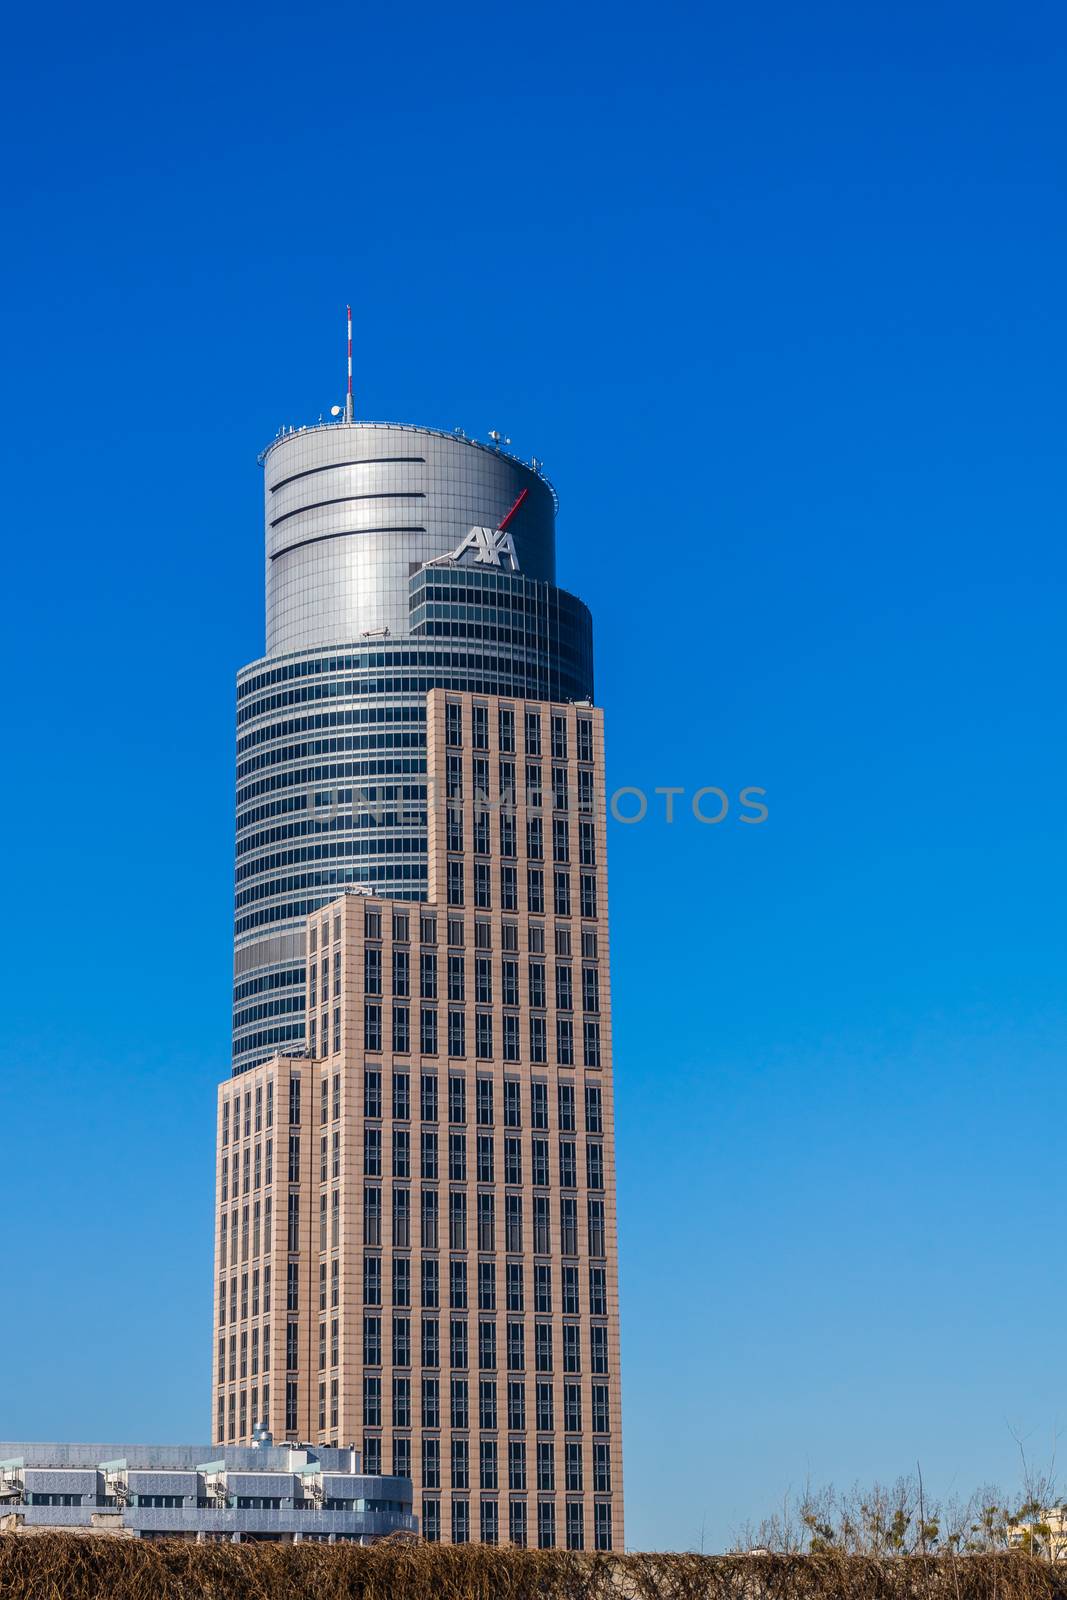 Warsaw Trade Tower by pawel_szczepanski